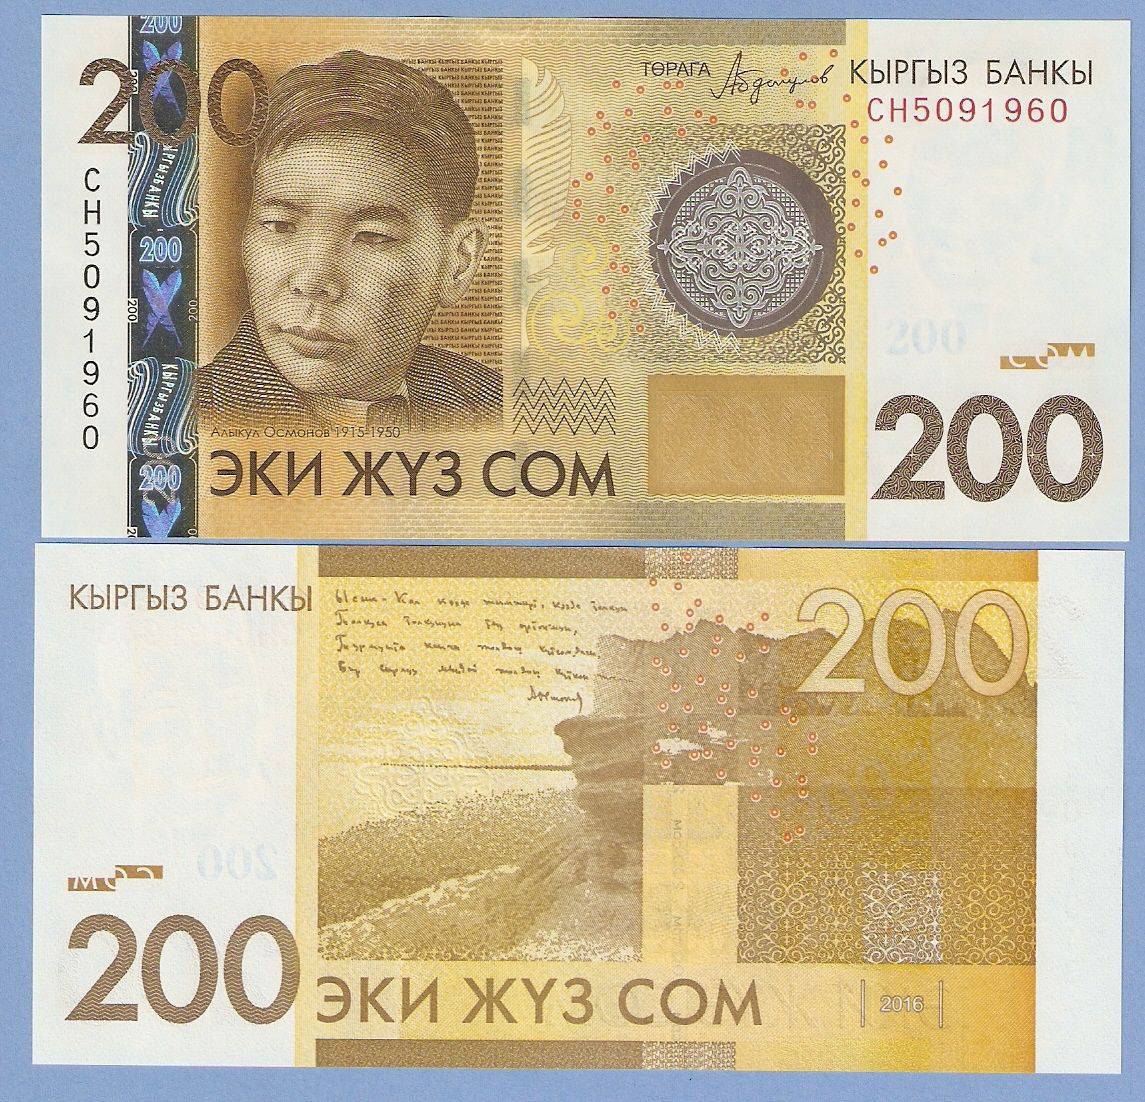 Киргизский сом к узбекскому. Эки жуз сом 200. 200 Сомов. Банкноты Киргизии. 200 Сом образец.